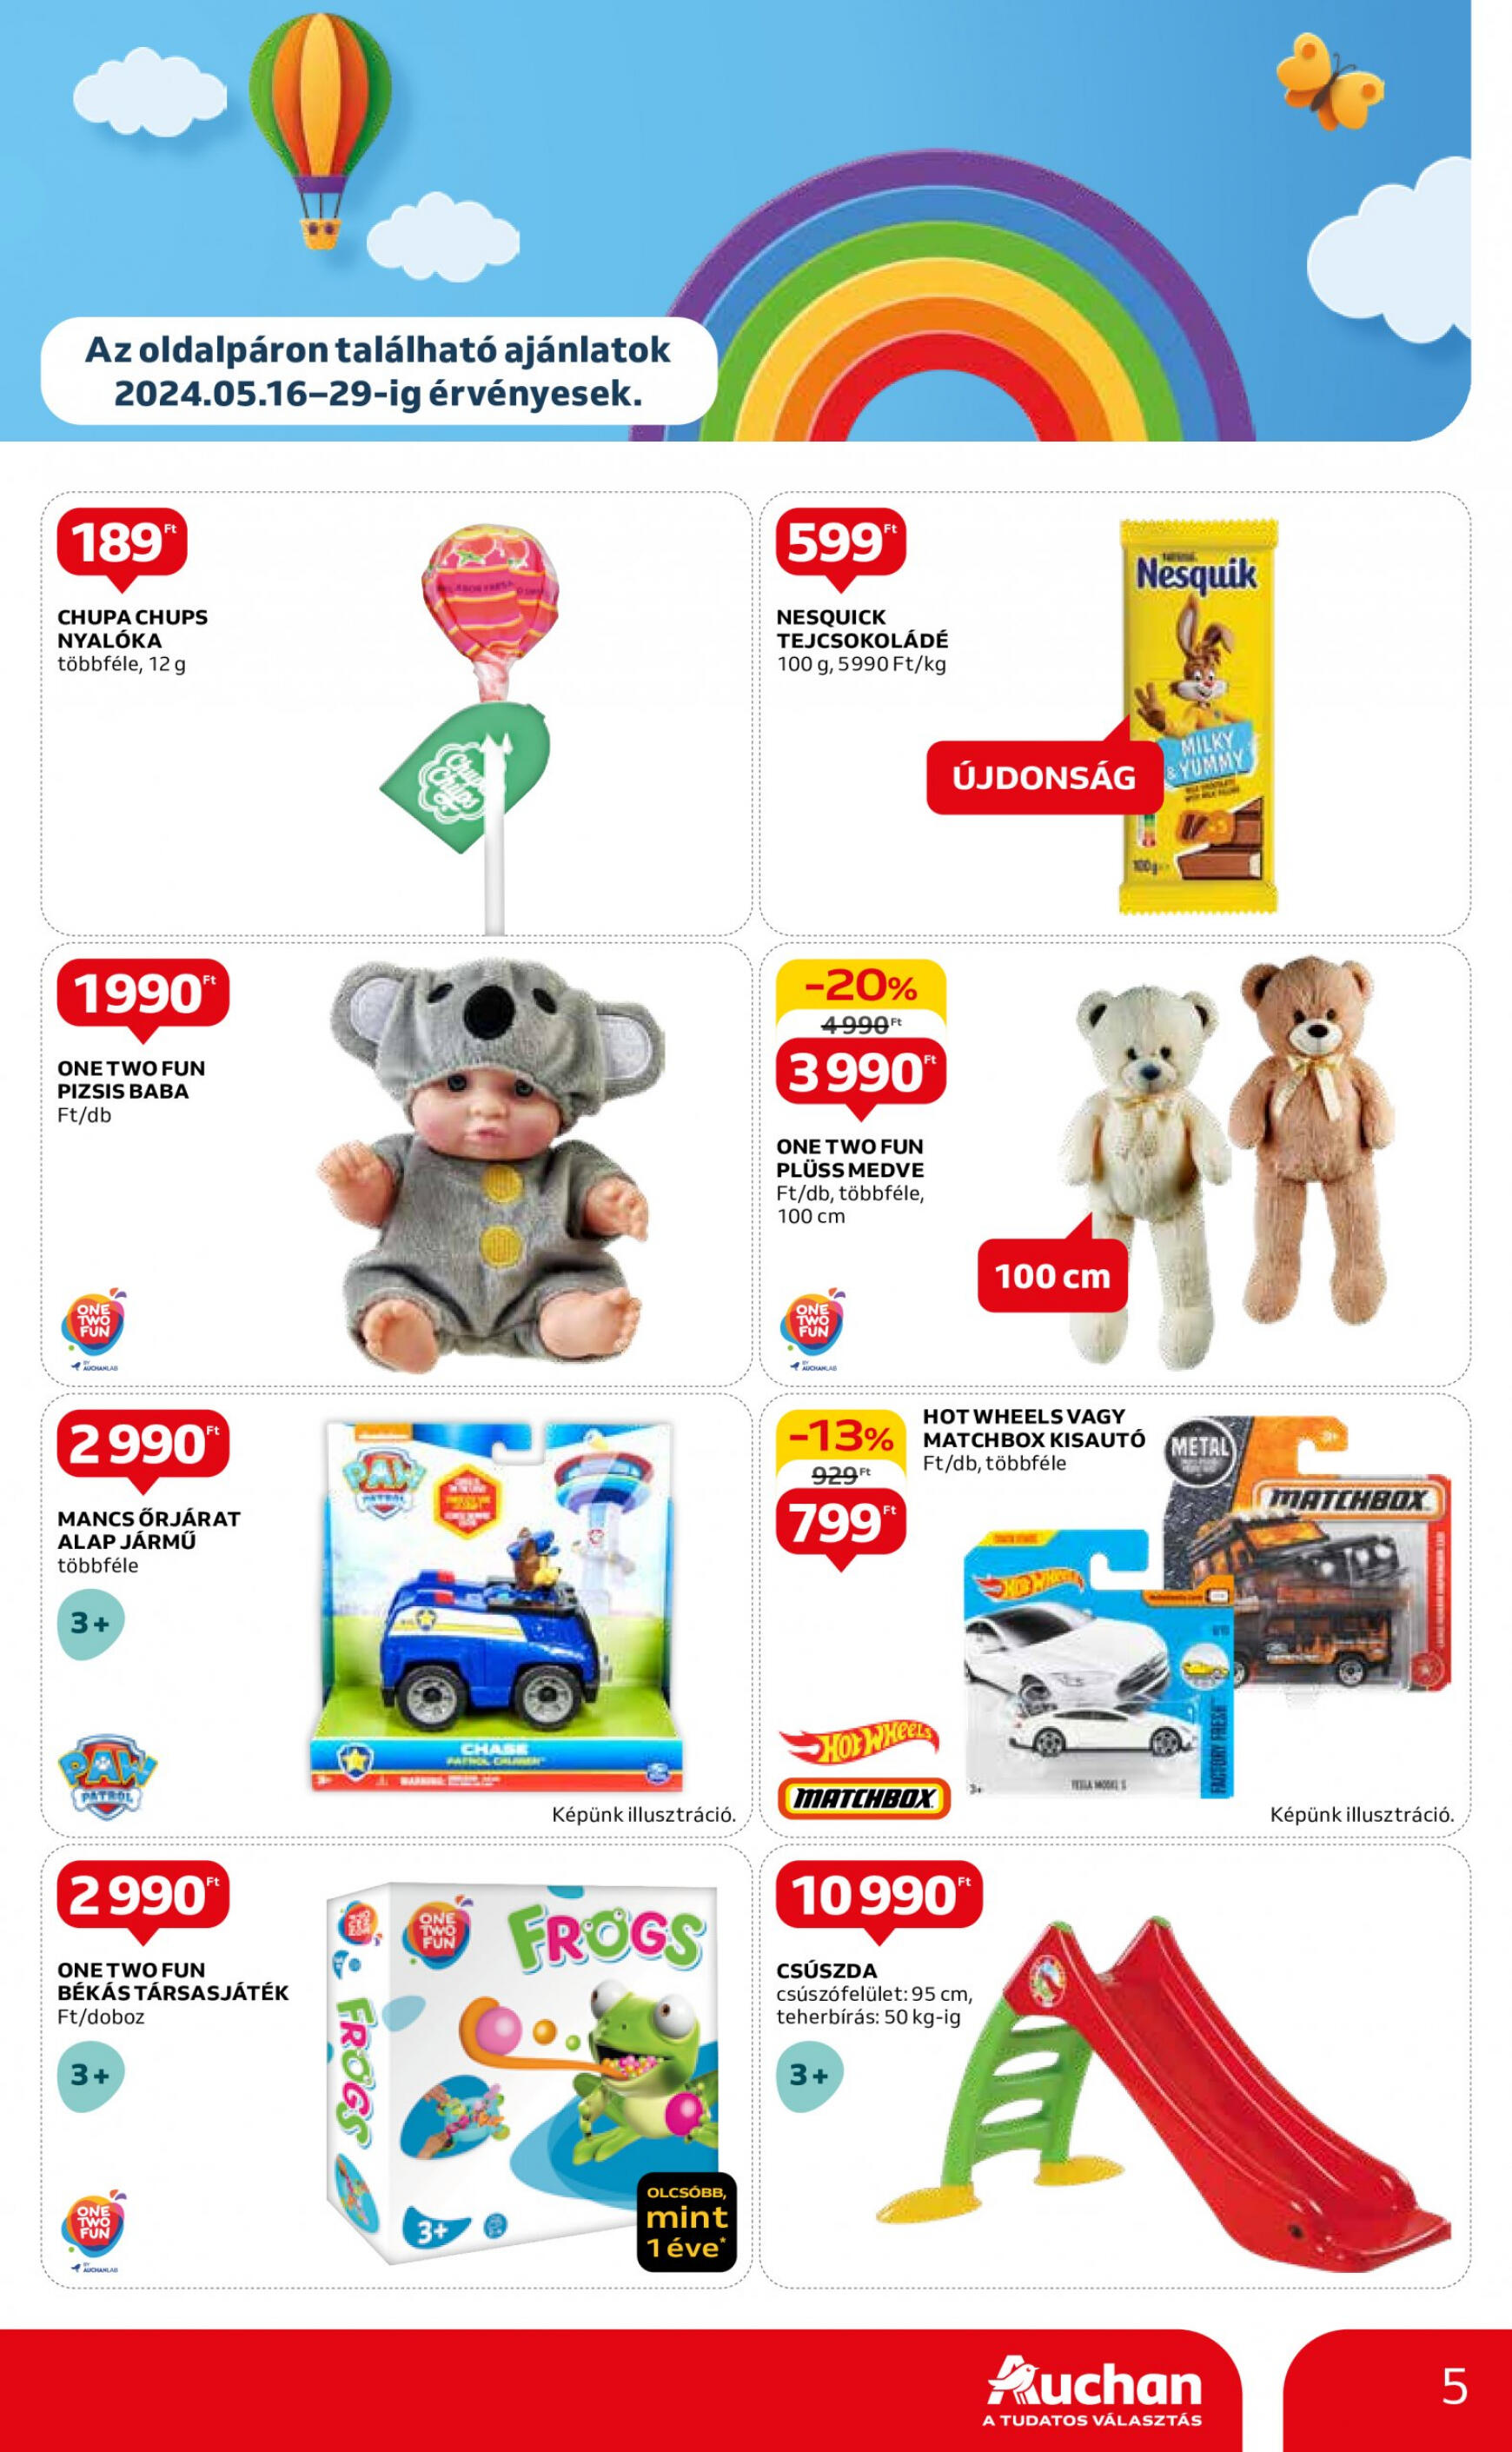 auchan - Aktuális újság Auchan szupermarket 05.16. - 05.22. - page: 5